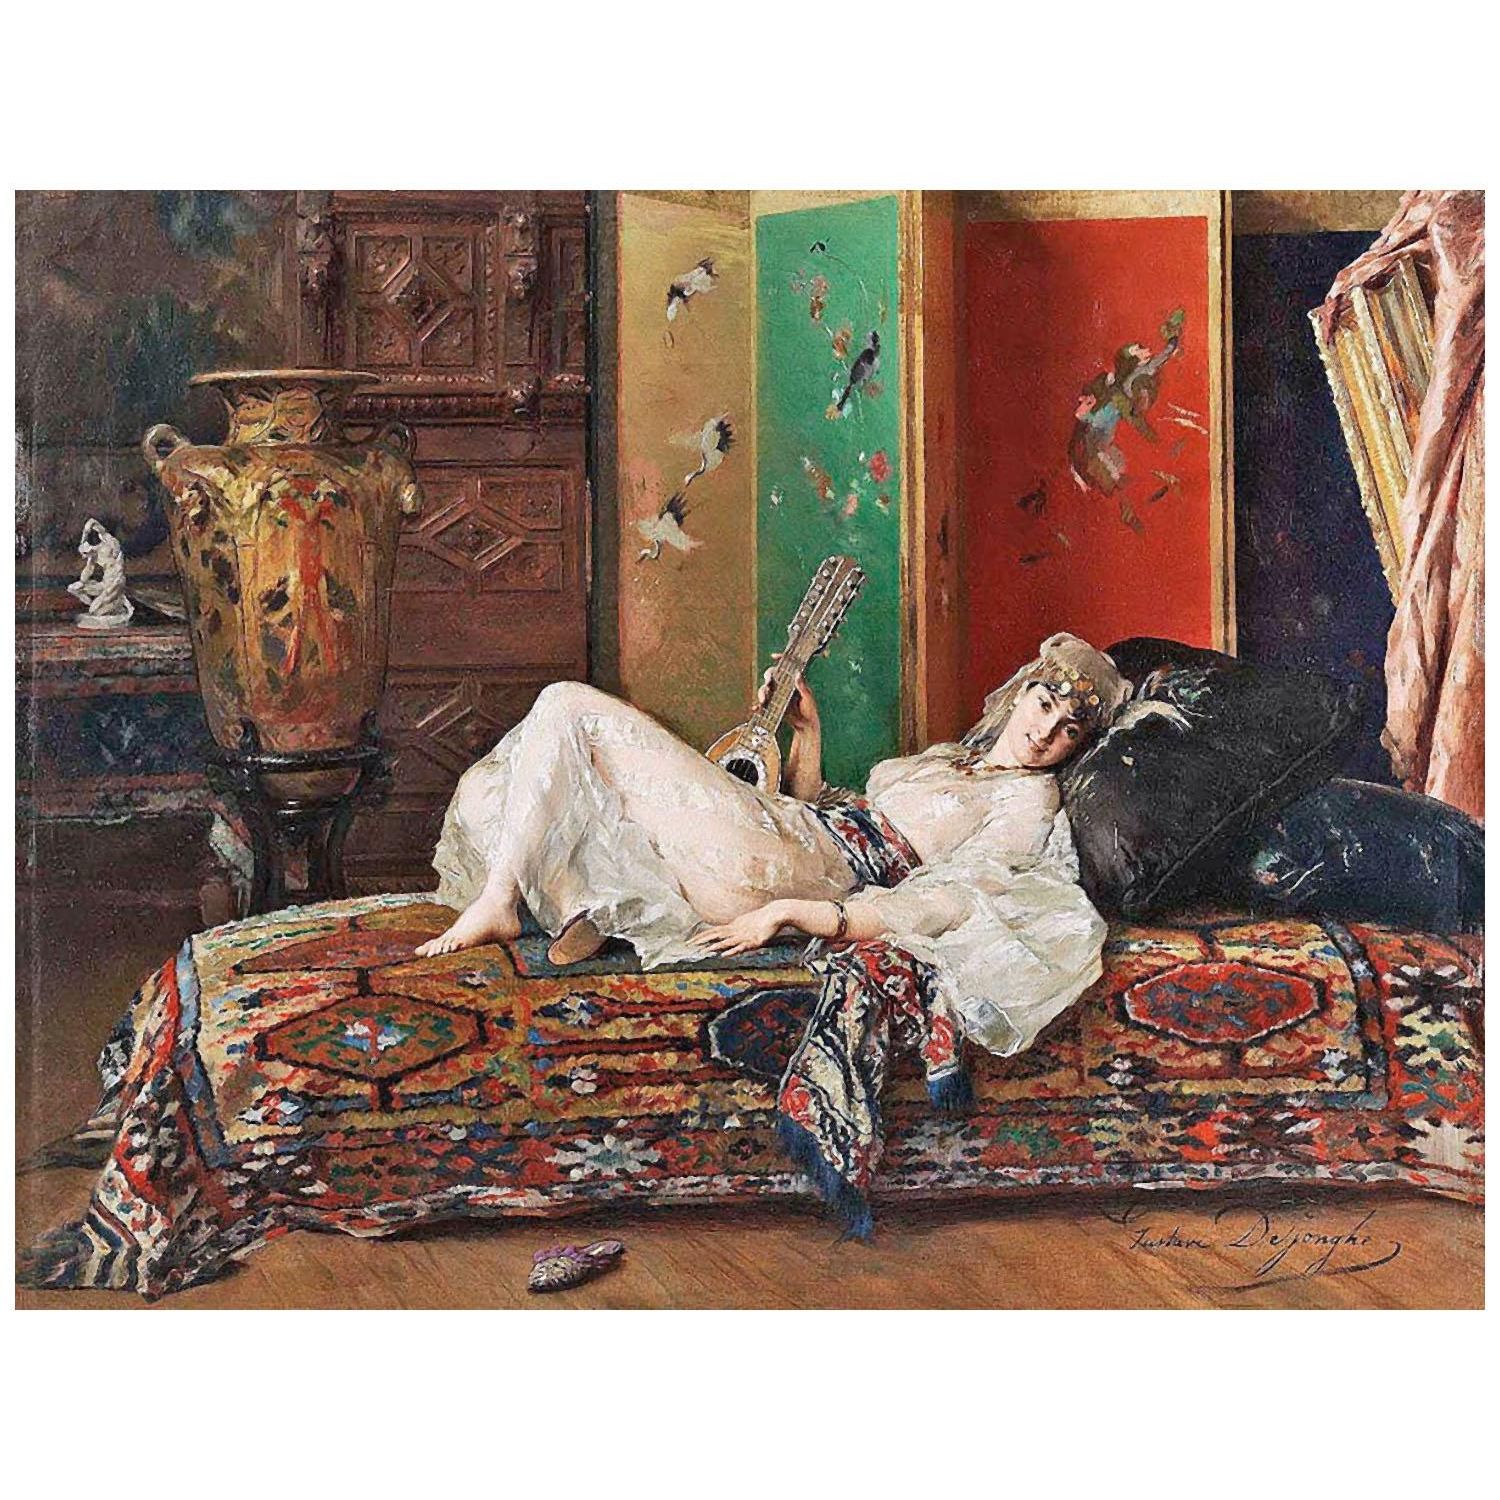 Gustave De Jonghe. La sieste de l'après-midi. 1863. Private collection